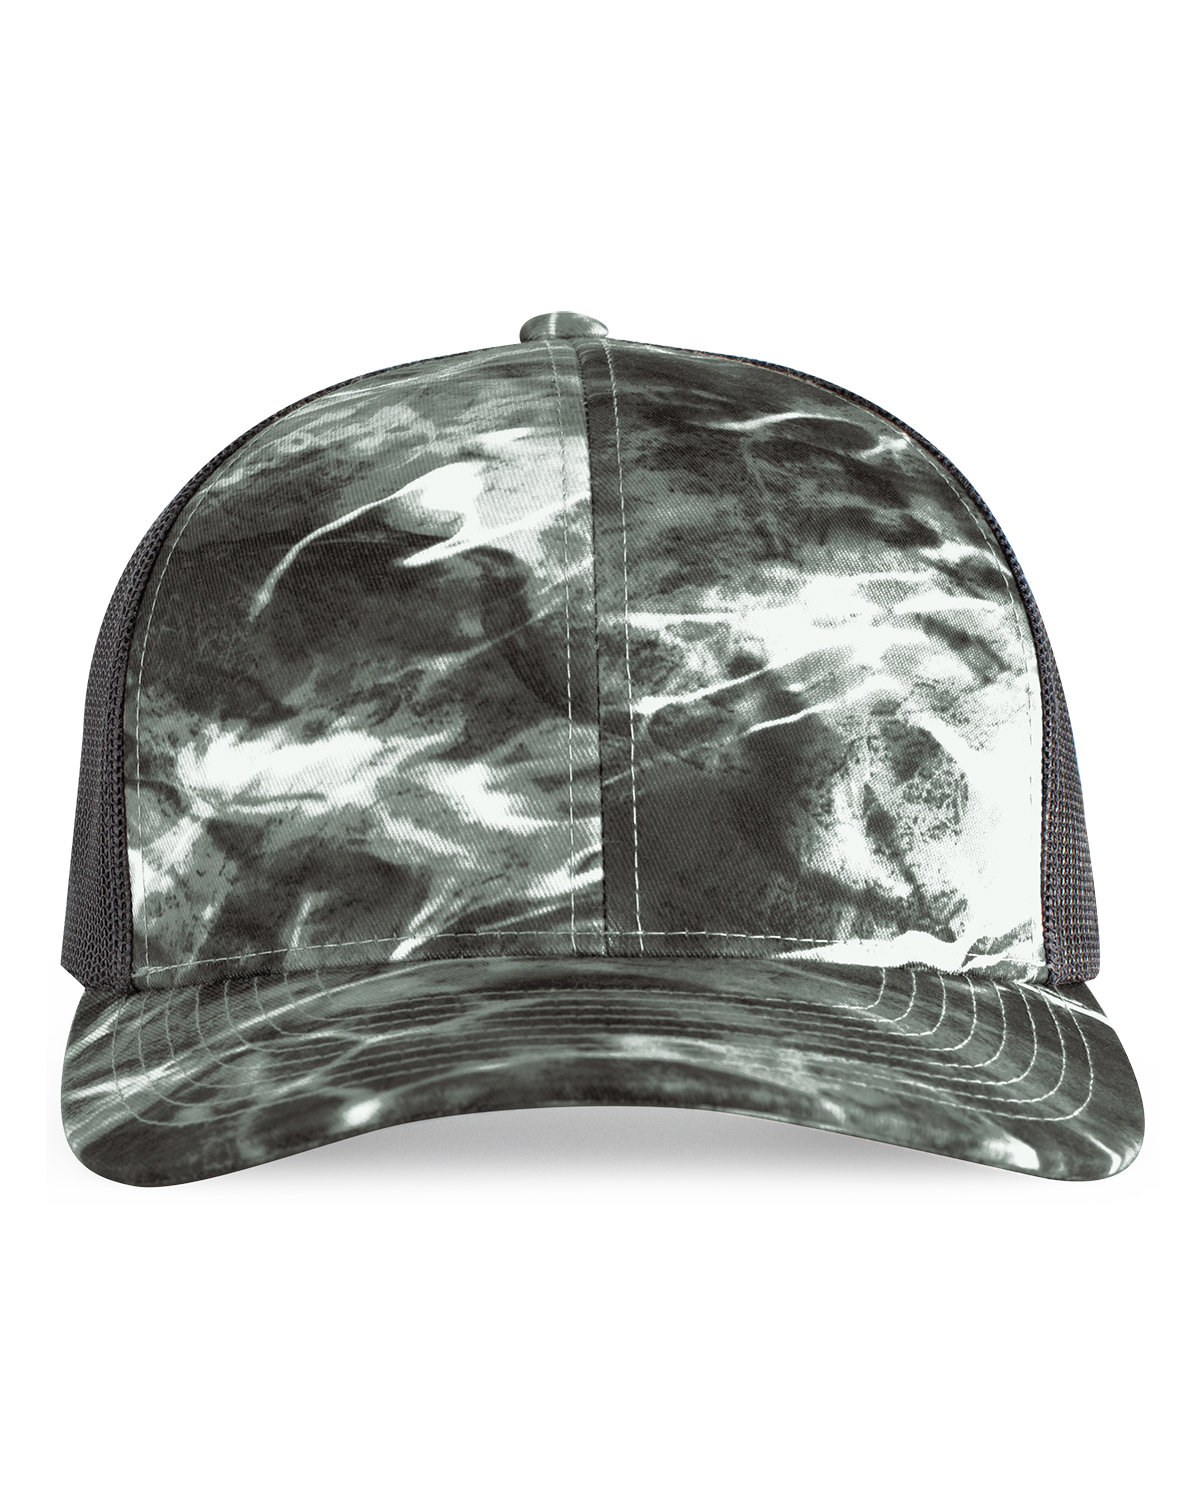 Snapback Trucker Hat-Pacific Headwear